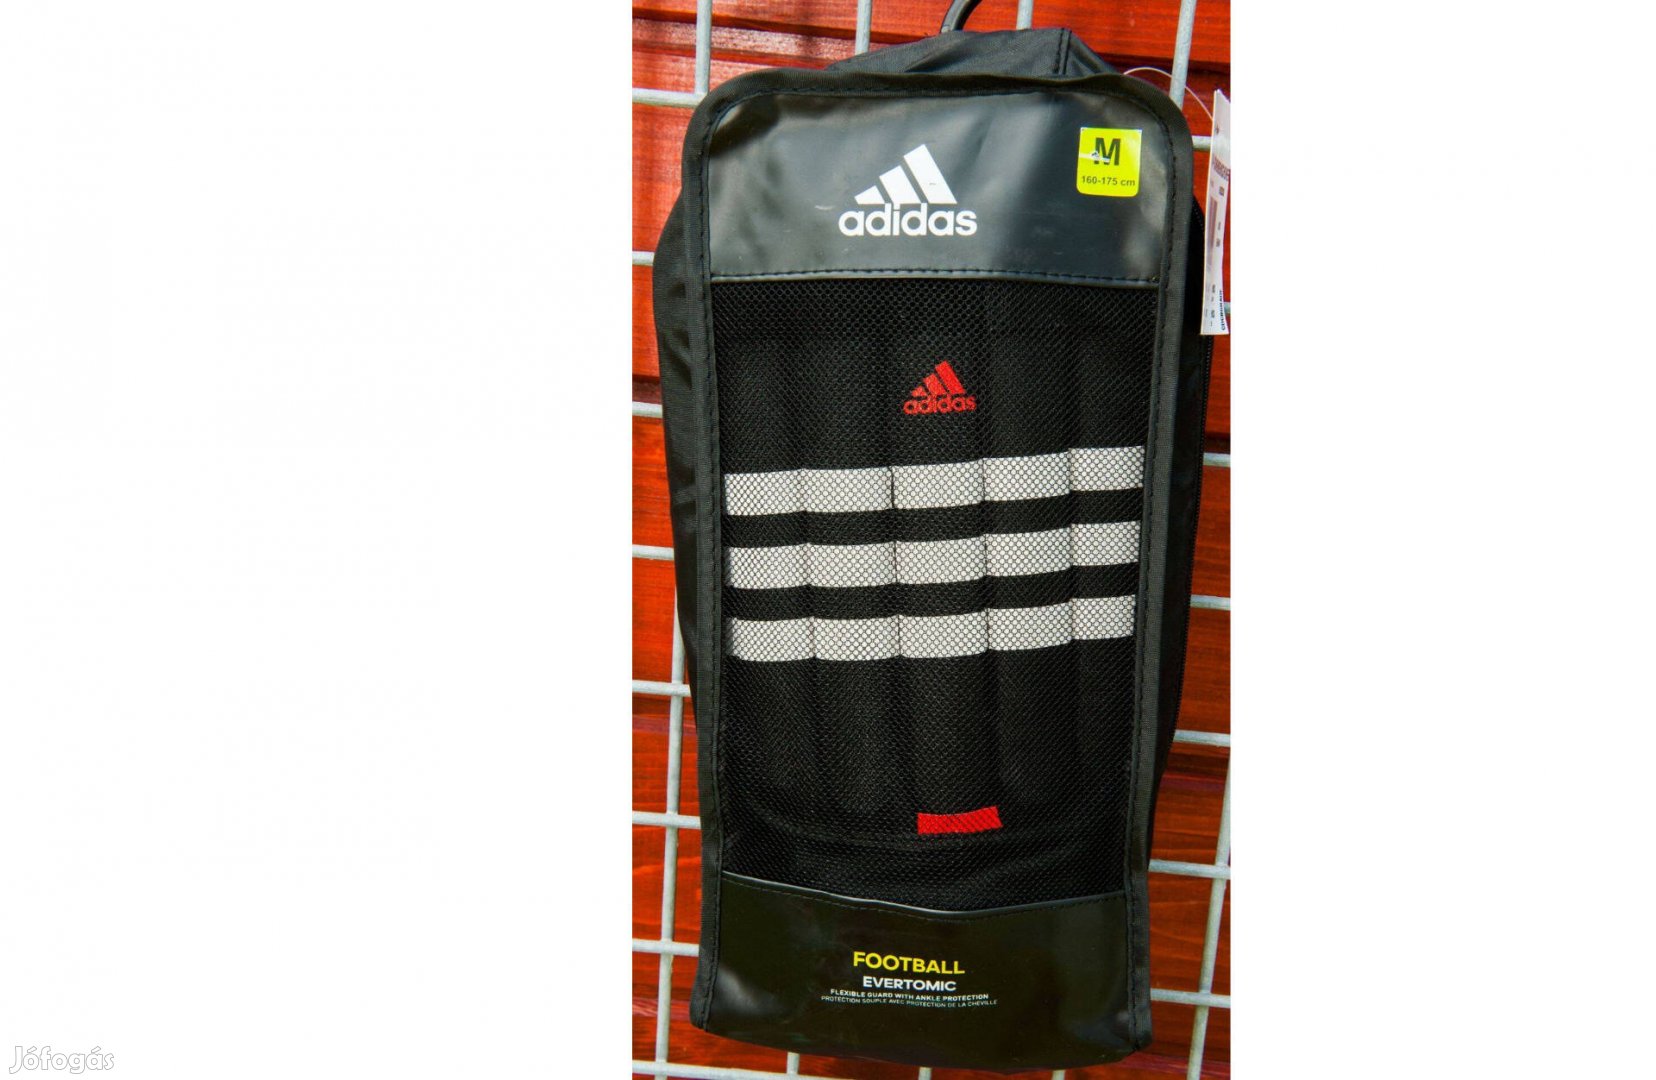 Adidas bokavédős sípcsontvédő táskával (M, 160-175)